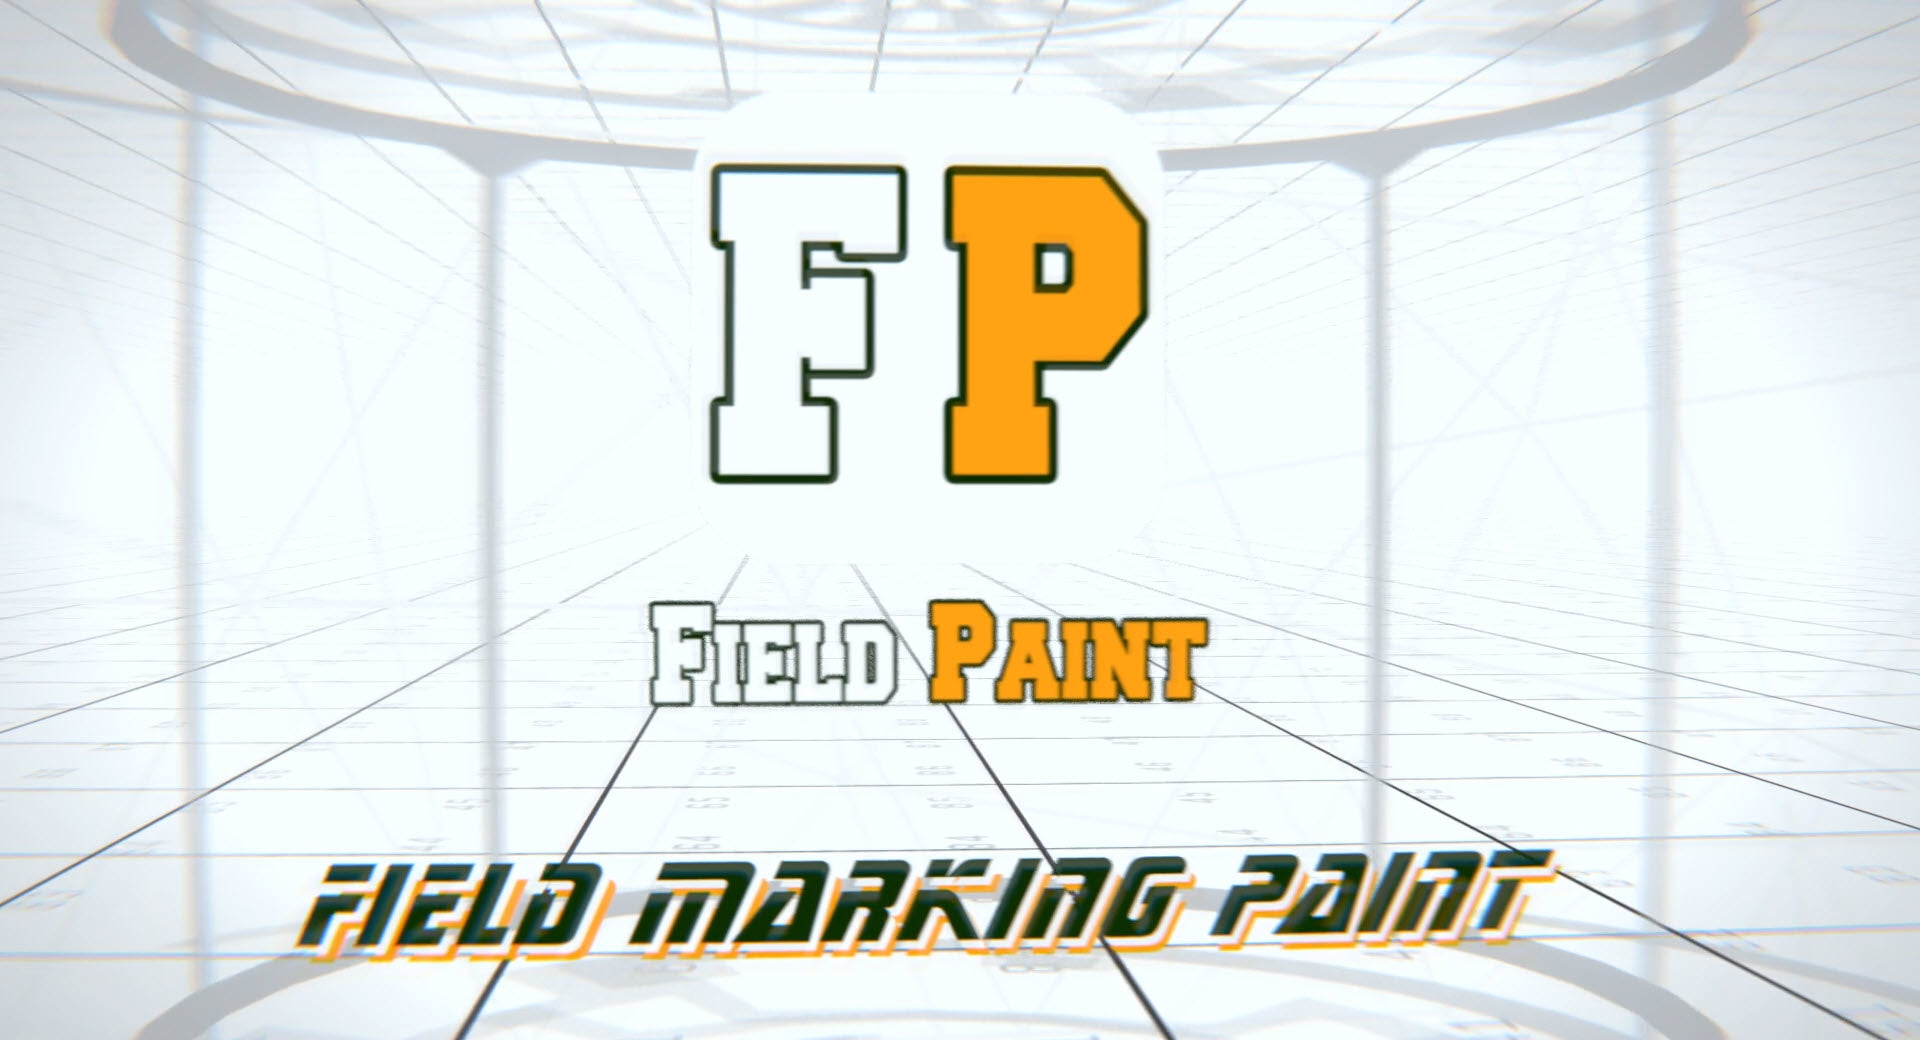 Load video: Field Marking Paint